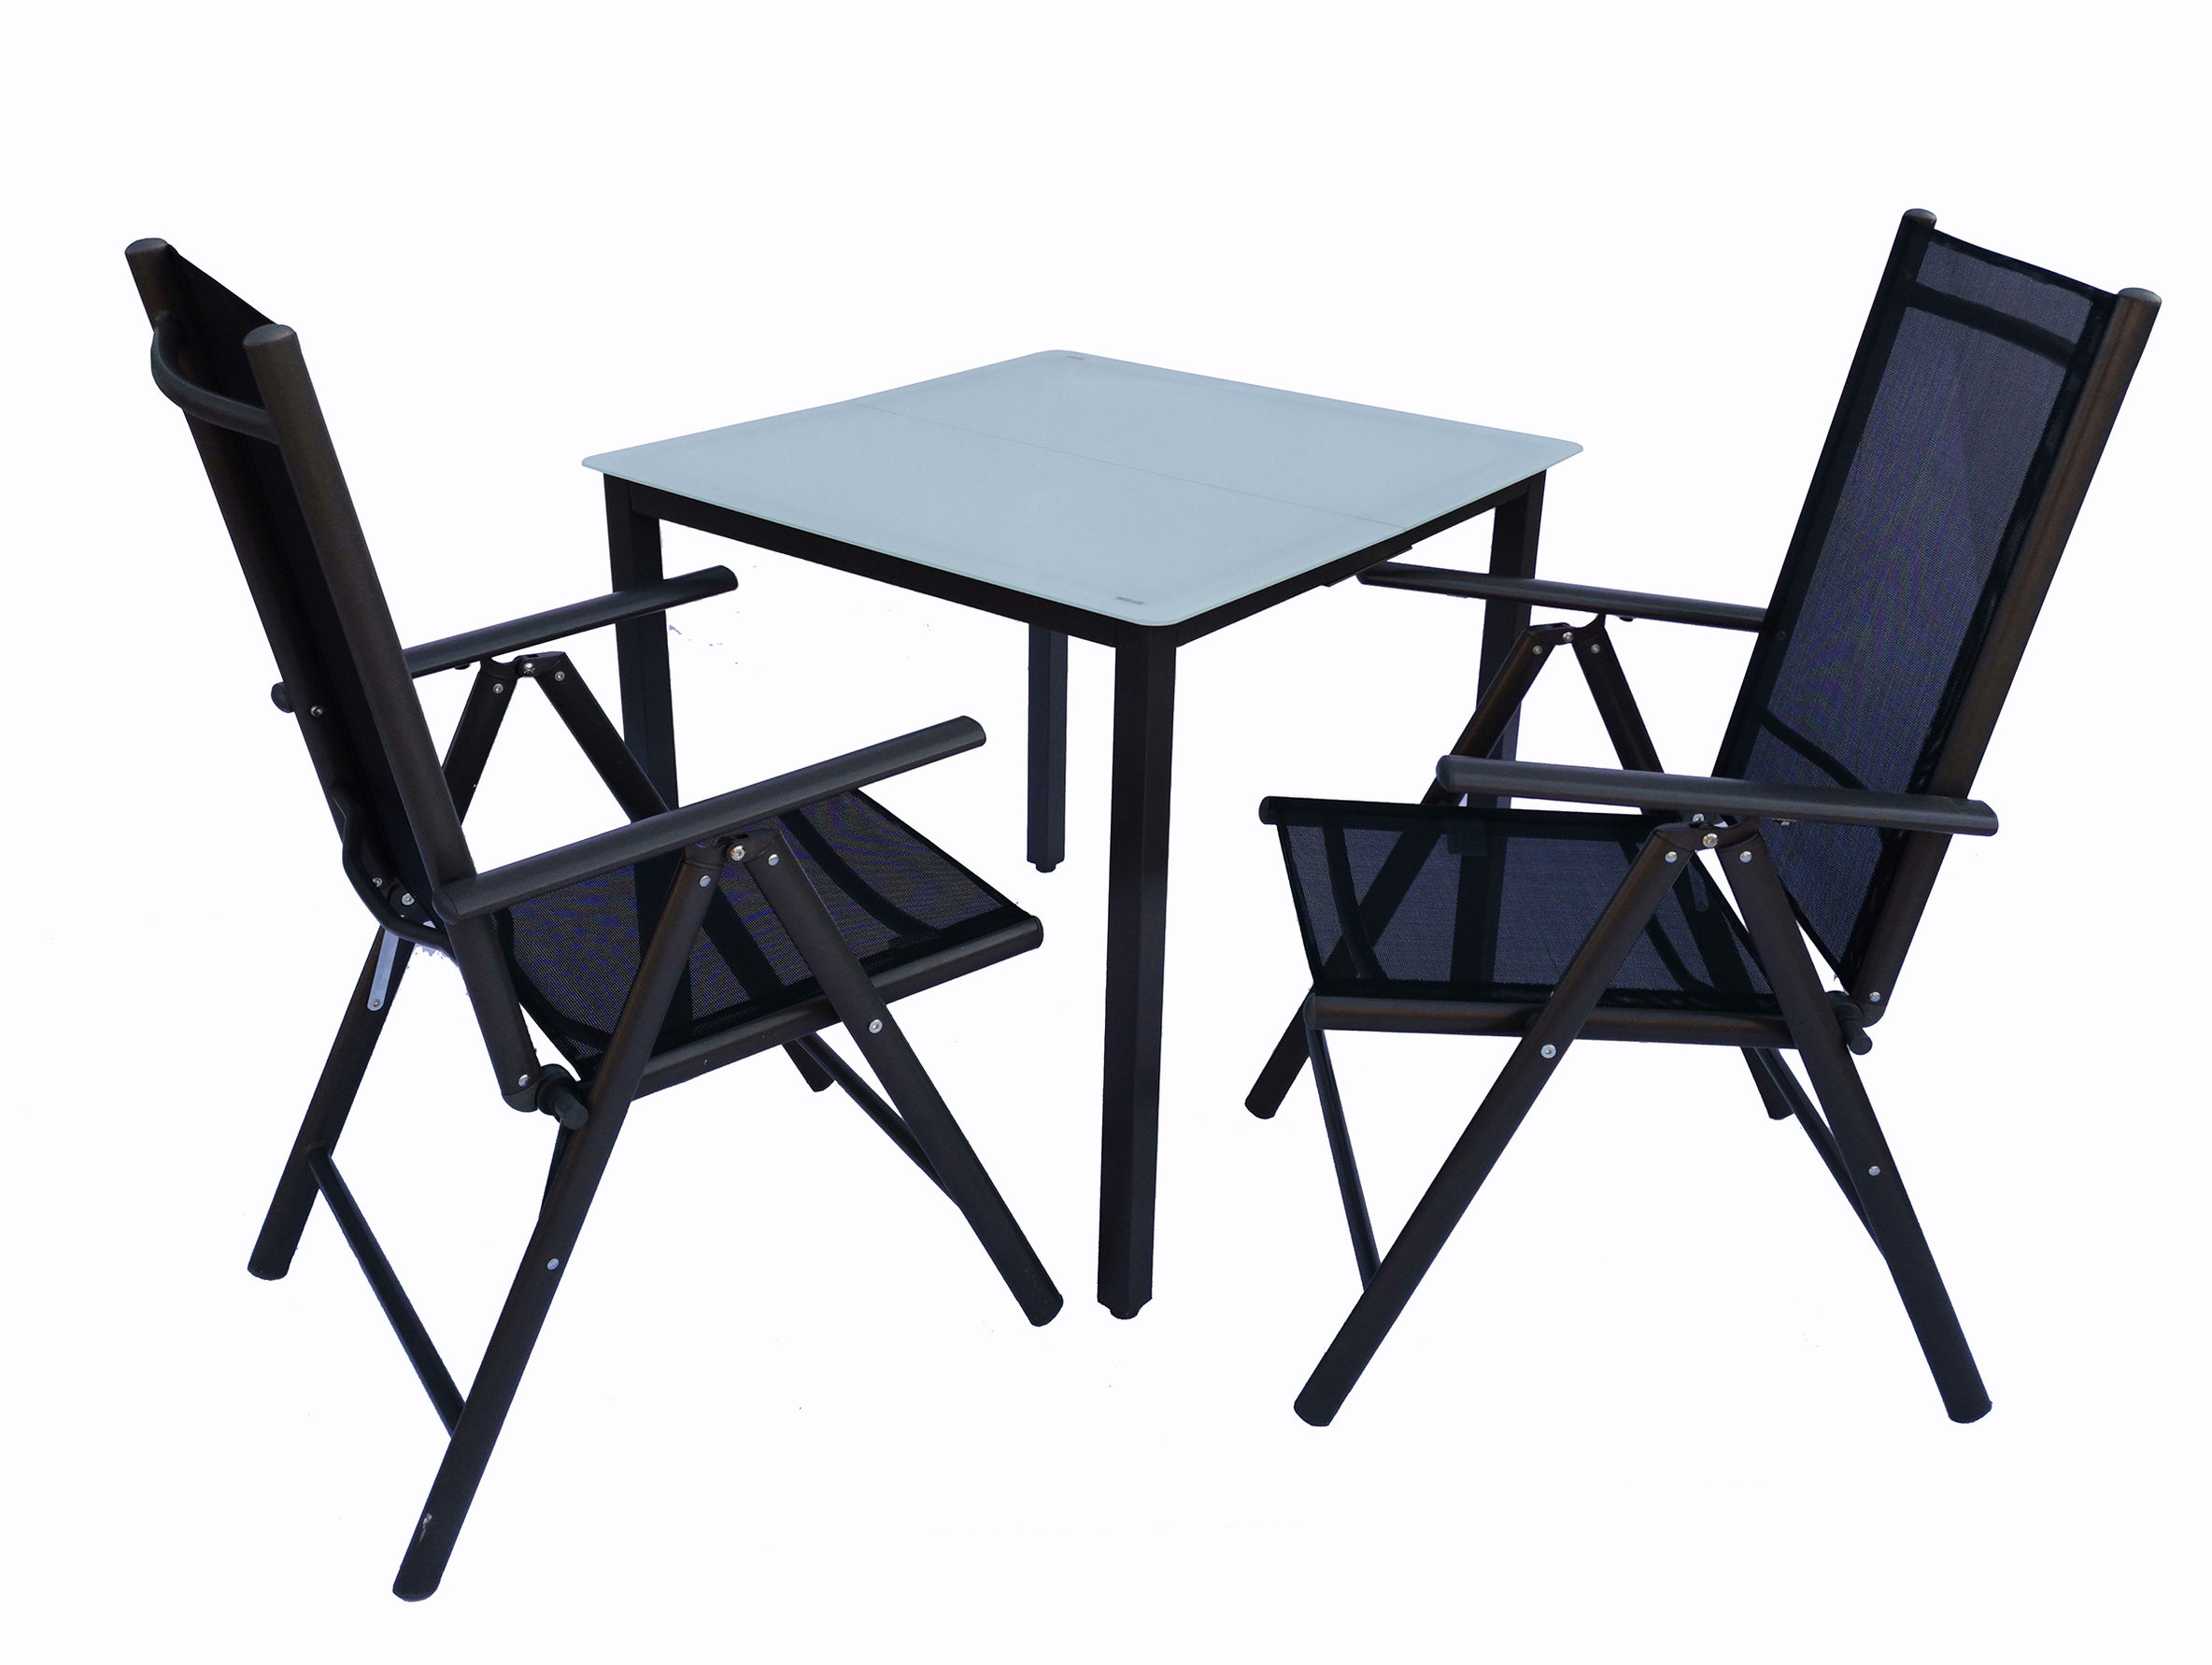 VCM Alu Gartenmöbel Sitzgruppe Set 80x80 Mattglas Farbe: Tisch + 2 Stühle:  Anthrazit | Weltbild.de